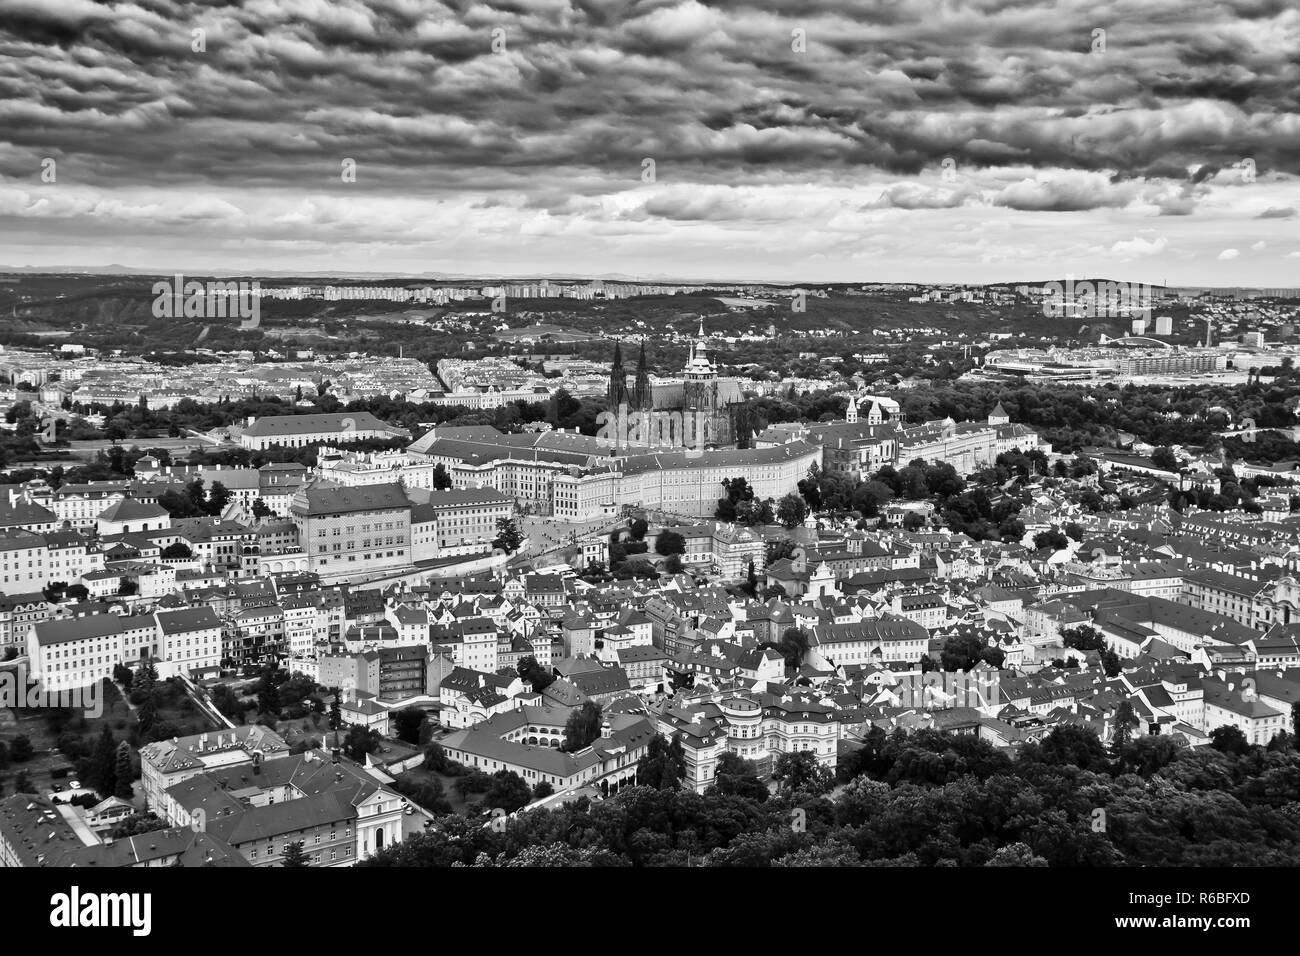 Prag ist die Hauptstadt und die grösste Stadt in der Tschechischen Republik, die 14. größte Stadt in der Europäischen Union und die historische Hauptstadt von Böhmen. Stockfoto